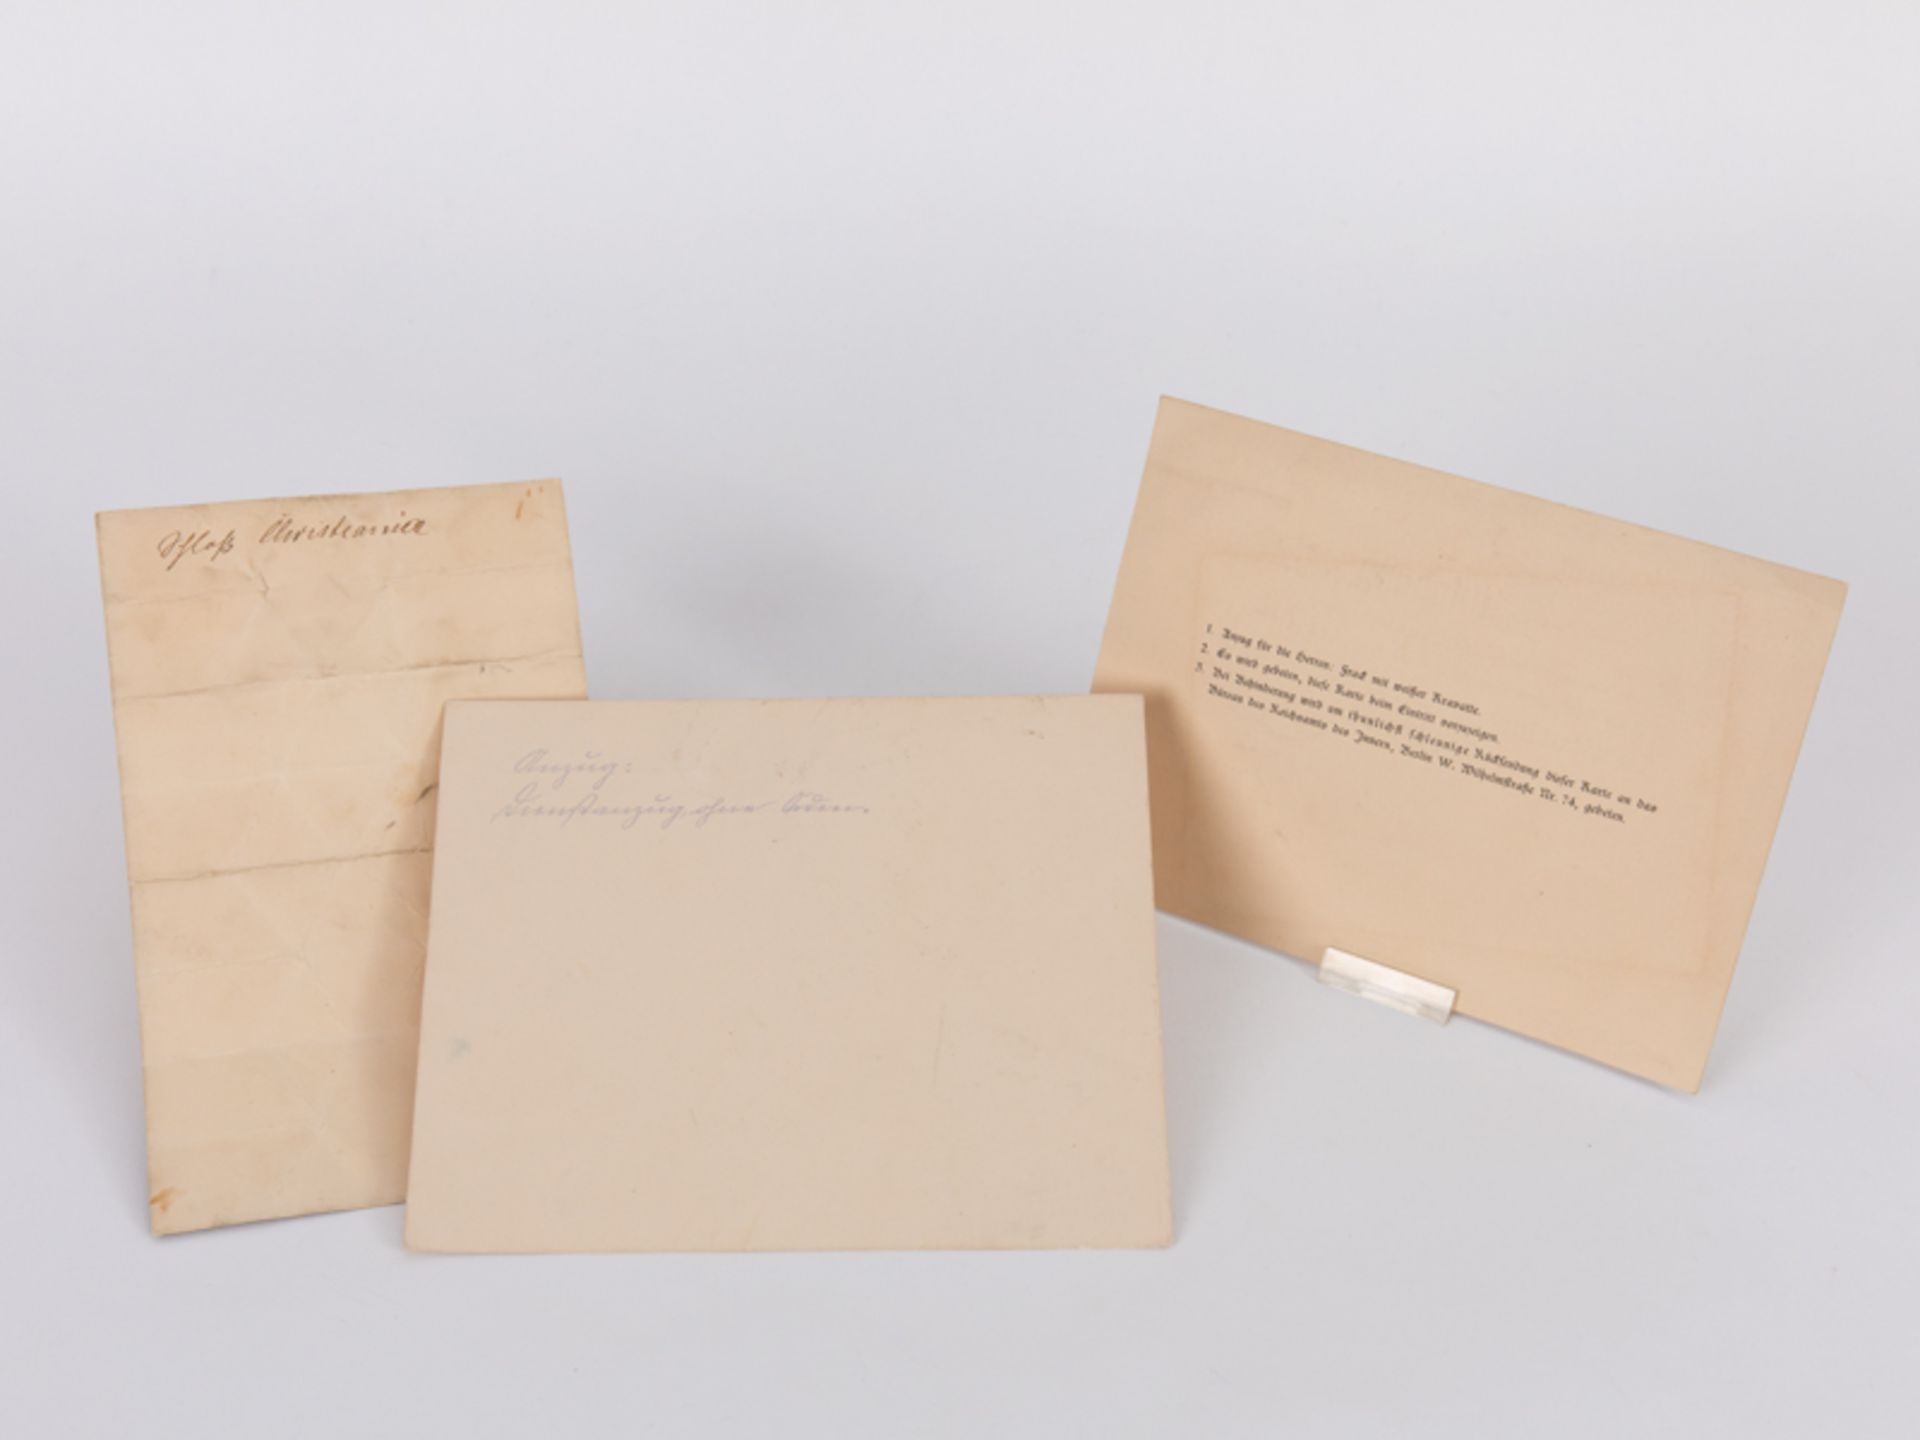 2 Einladungskarten + Speisekarte aus dem Besitz des kaiserl. Marineoffiziers u. Konteradmirals - Image 2 of 2